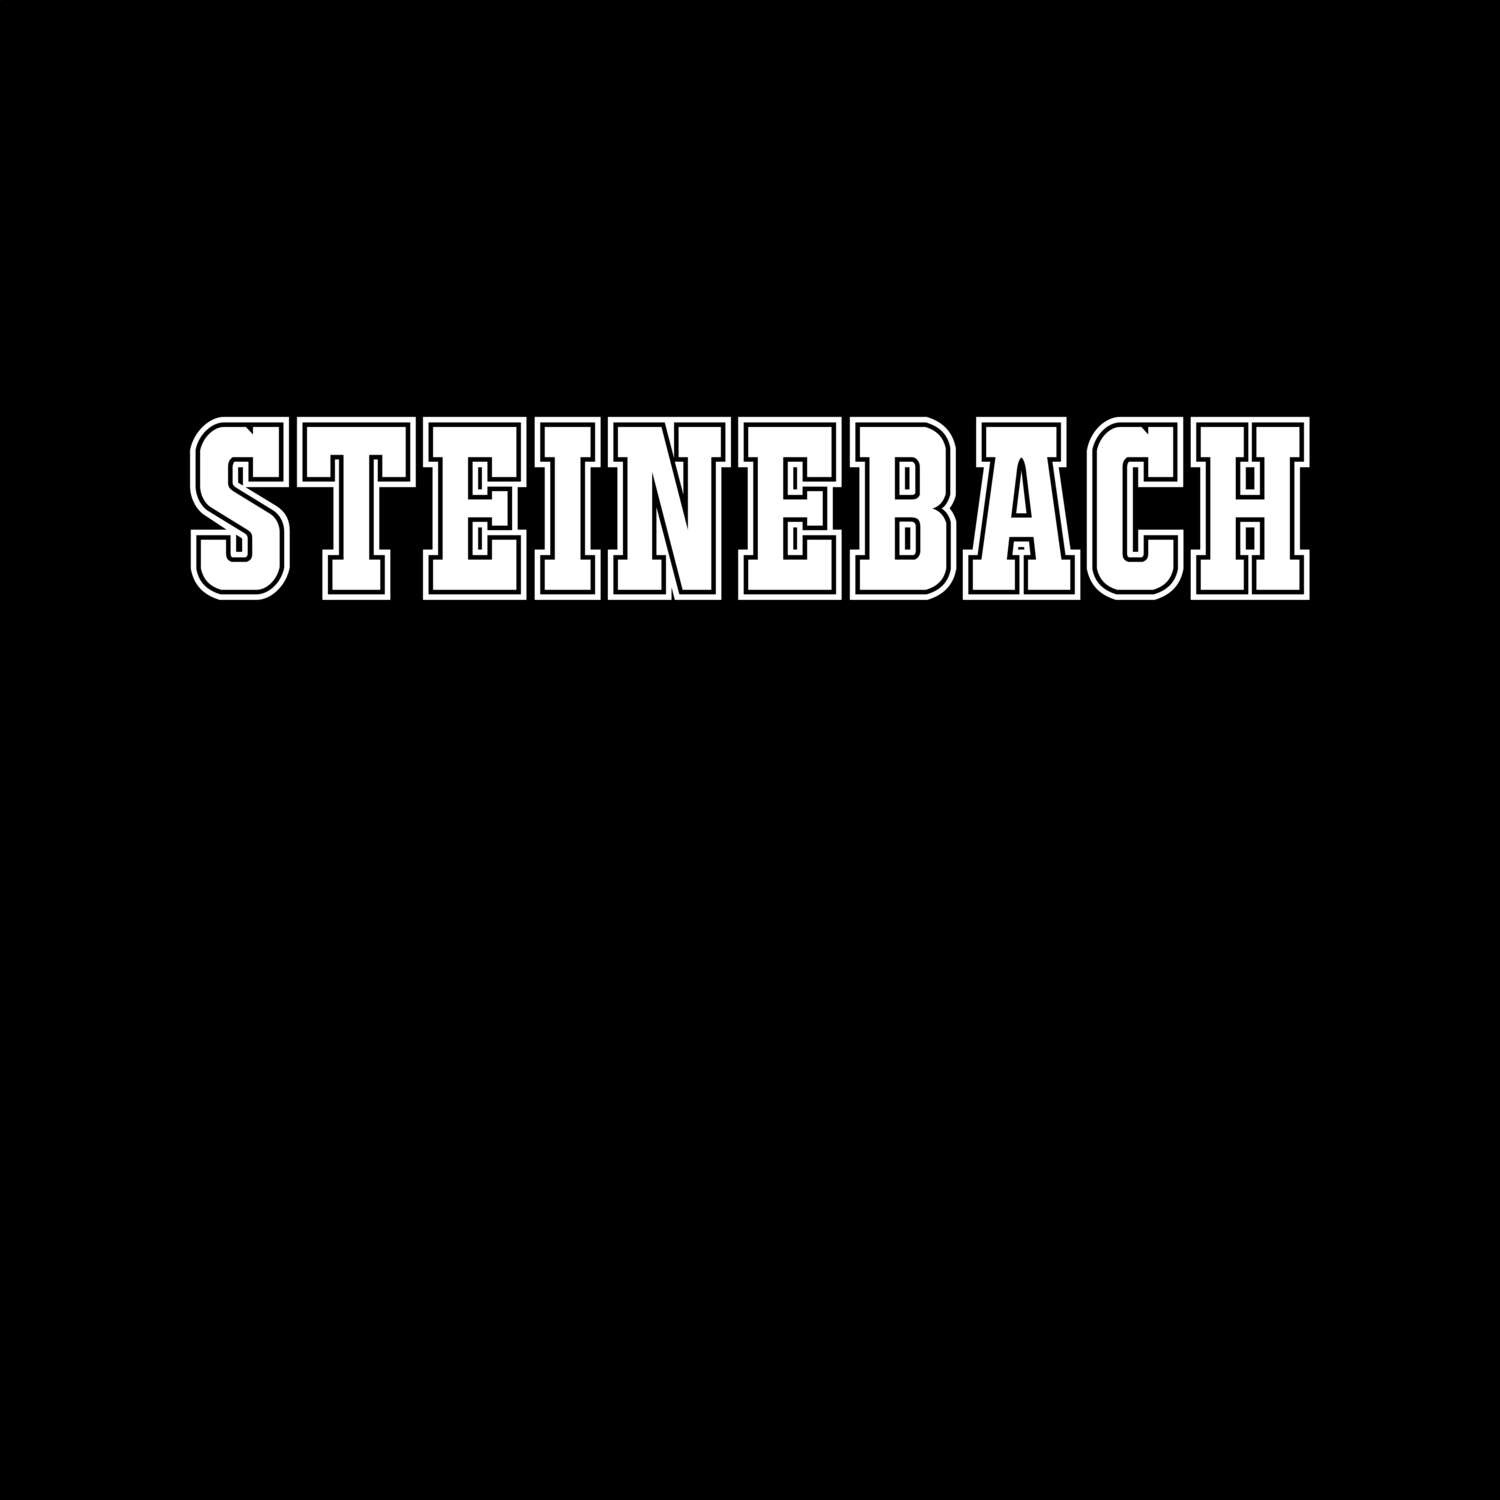 Steinebach T-Shirt »Classic«